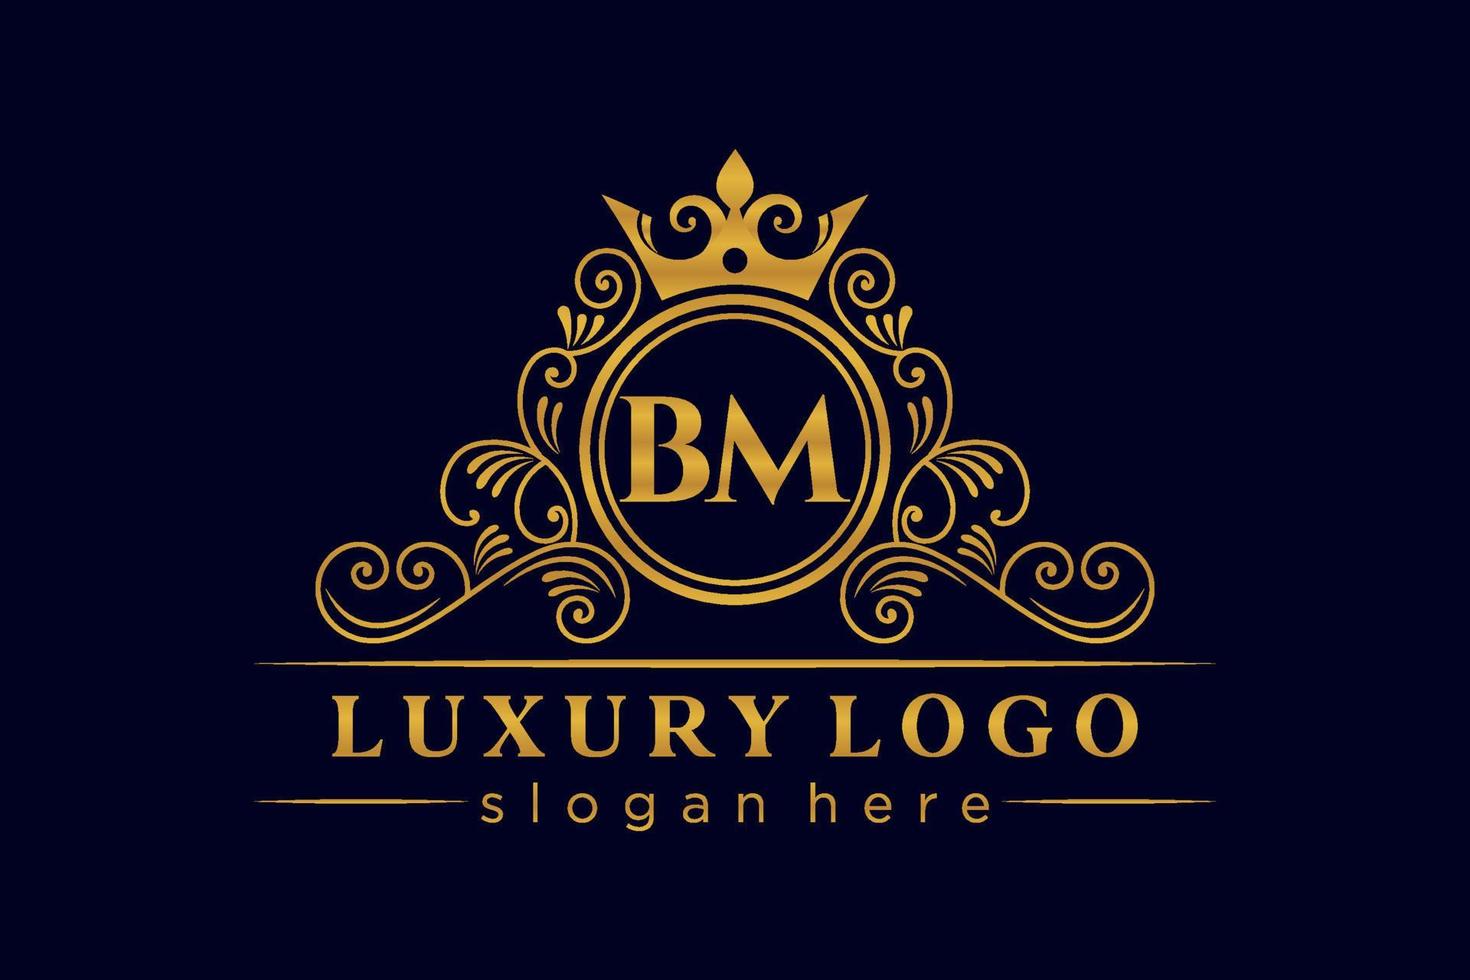 bm letra inicial ouro caligráfico feminino floral mão desenhada monograma heráldico antigo estilo vintage luxo design de logotipo vetor premium